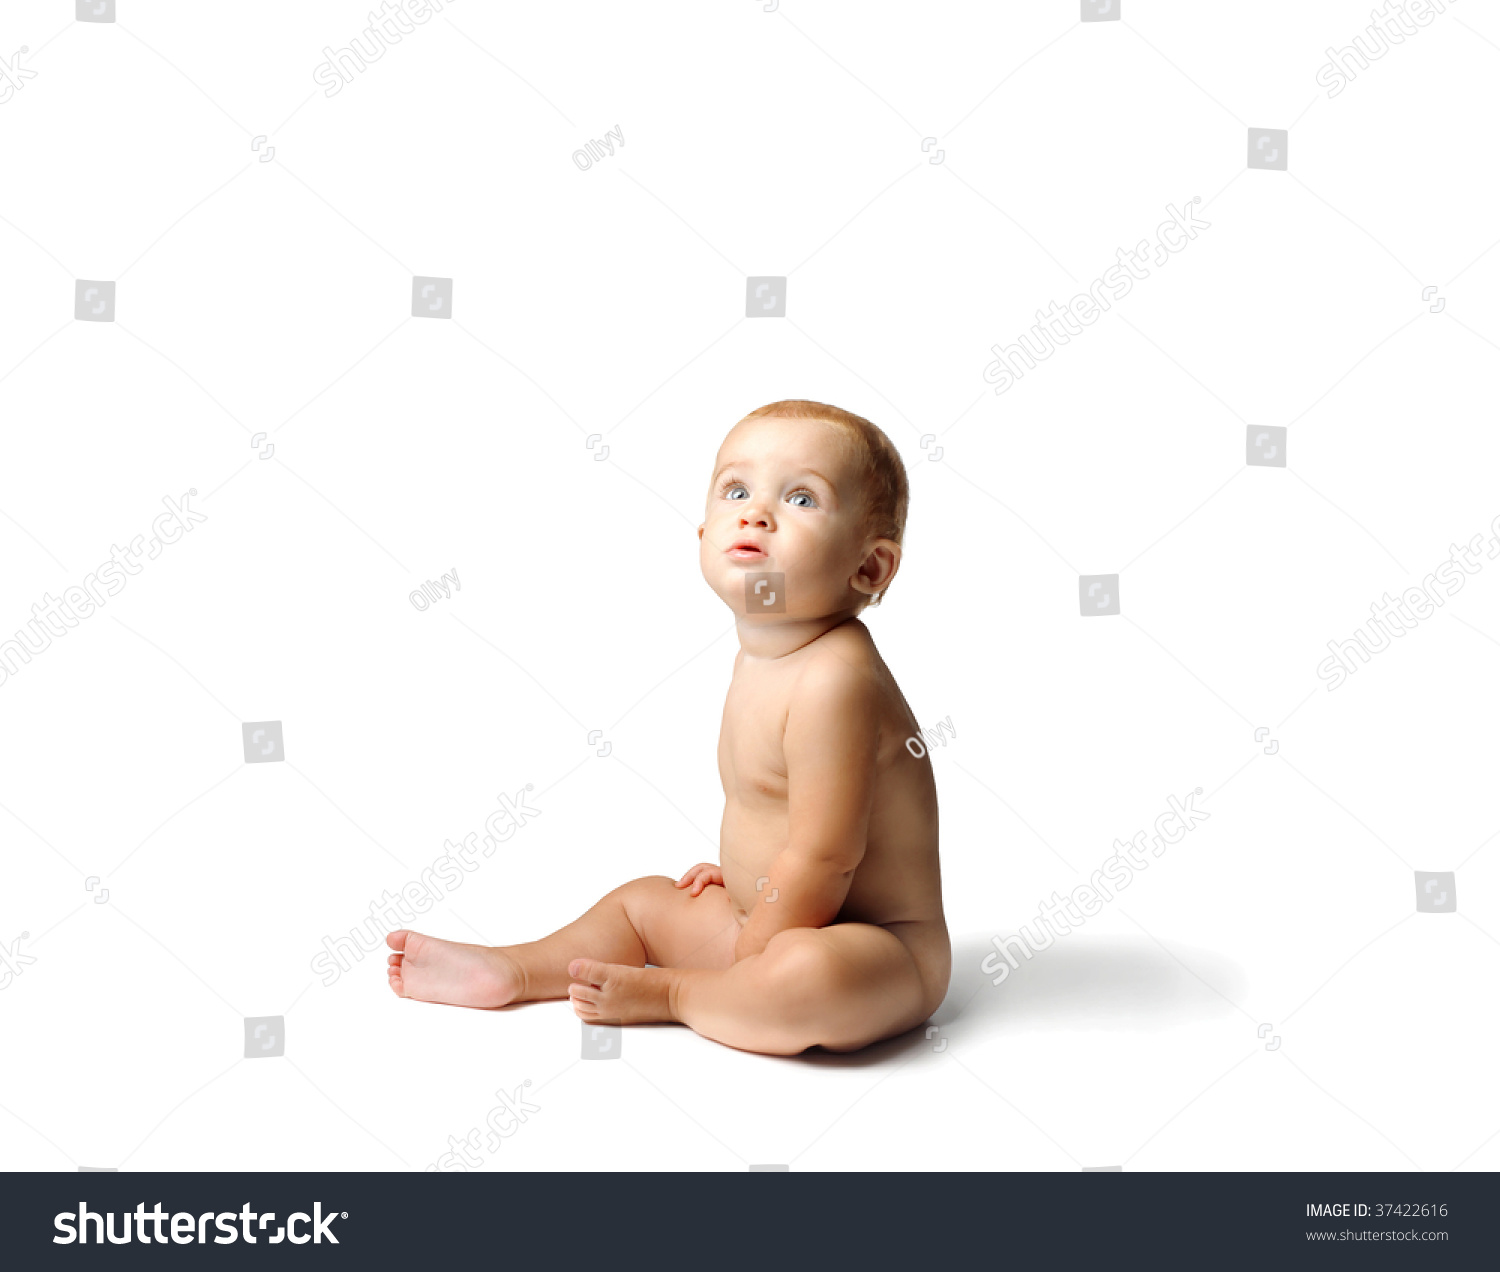 голая попка маленького ребенка фото 96